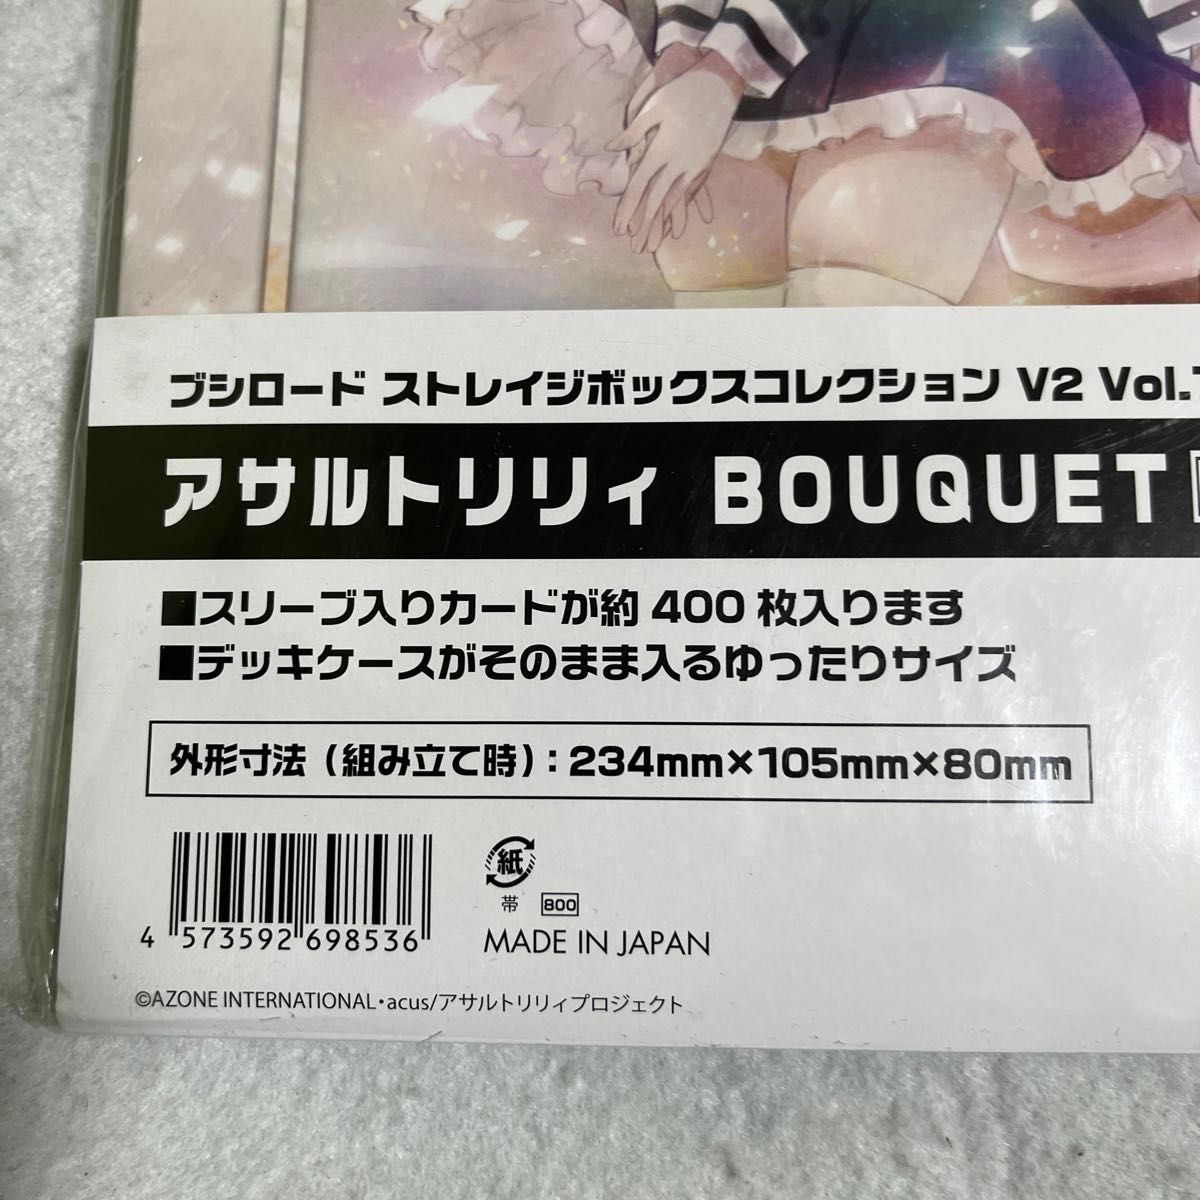 ブシロード ストレイジボックスコレクション V2 Vol.77 アサルトリリィ BOUQUET『梨璃&夢結』